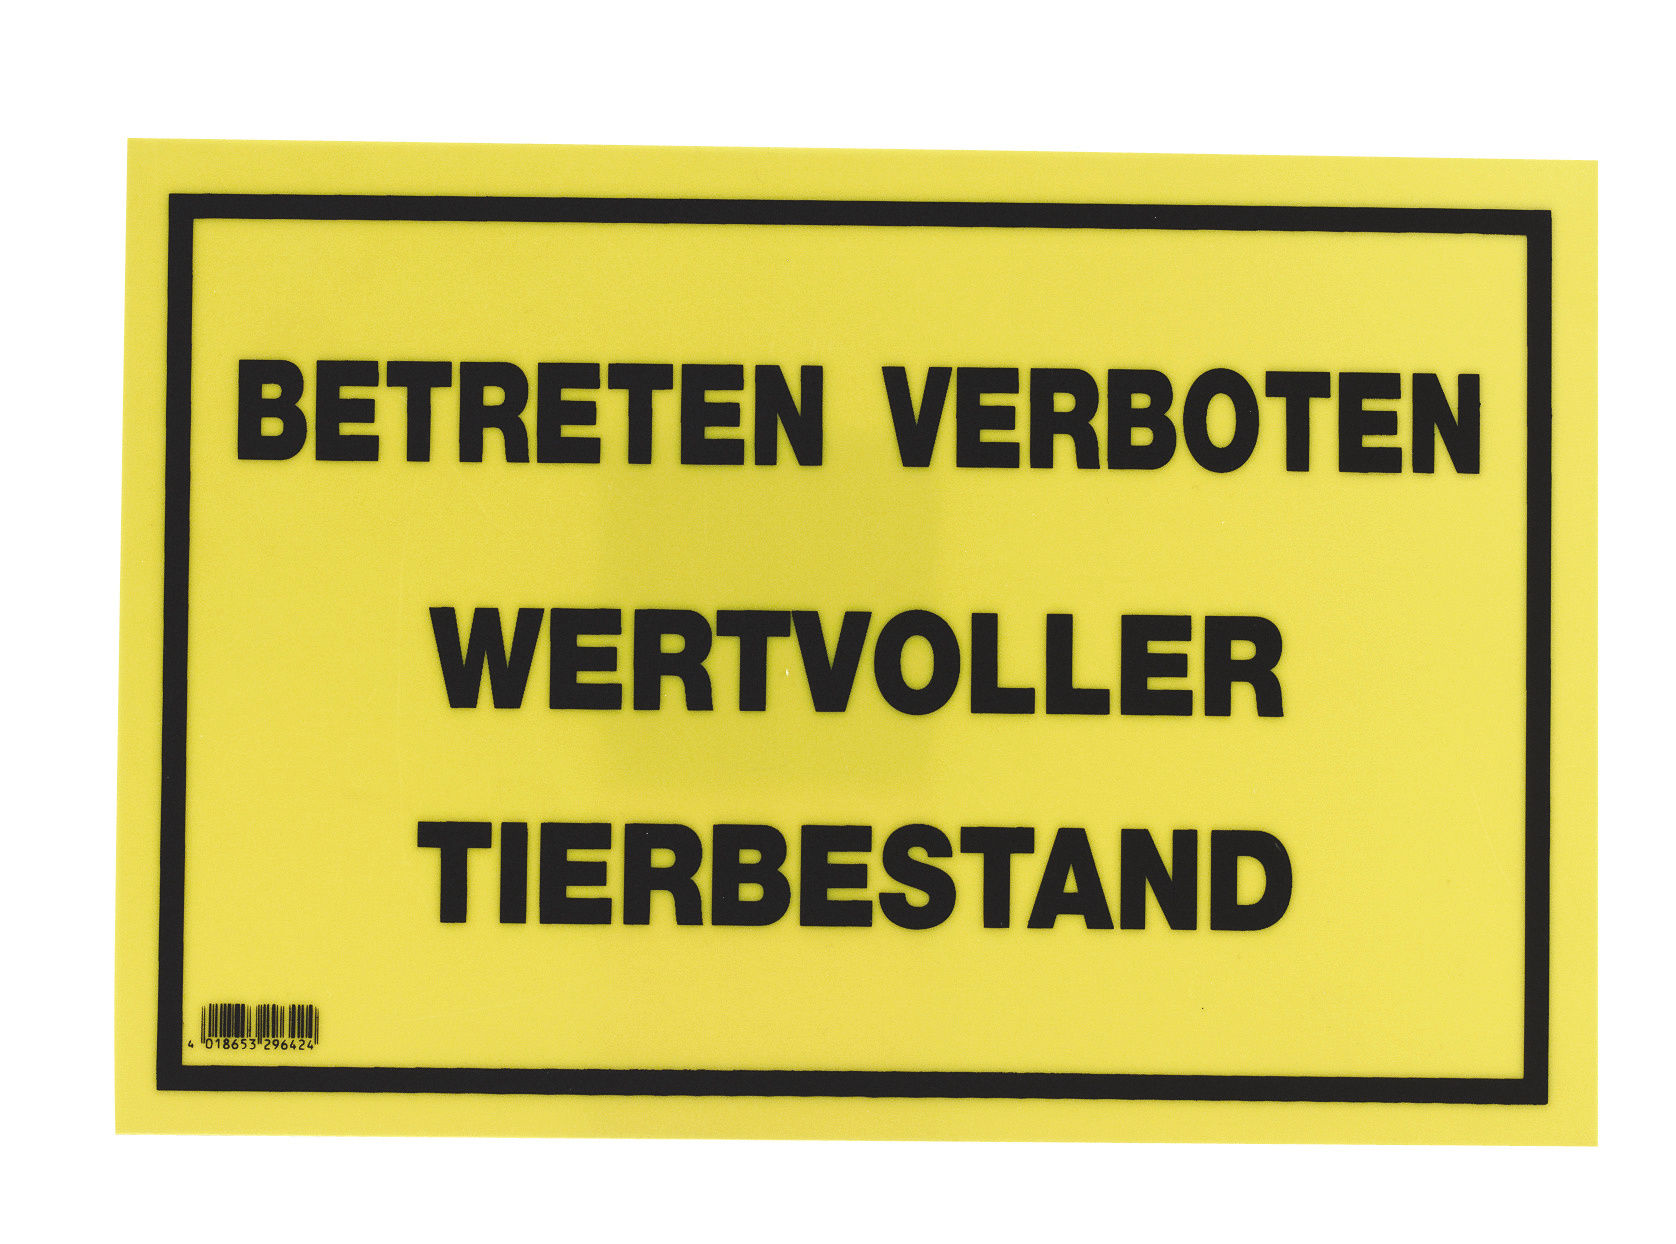 Warnschild 20x30cm, "Betreten verboten - Wertv. Tierbestand"